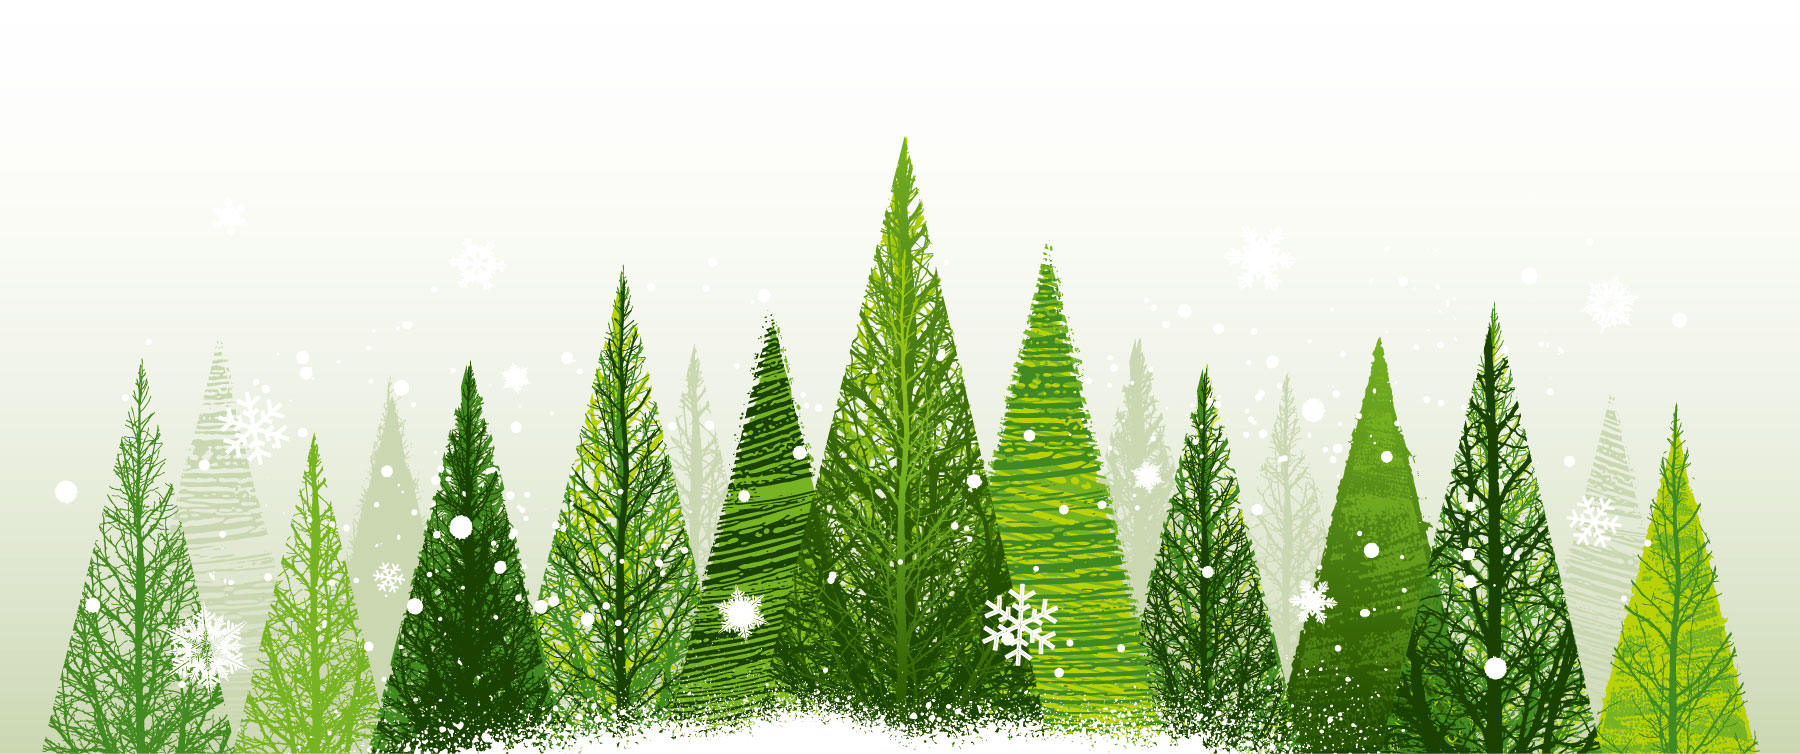 冬の画像サンプル-雪降る針葉樹林